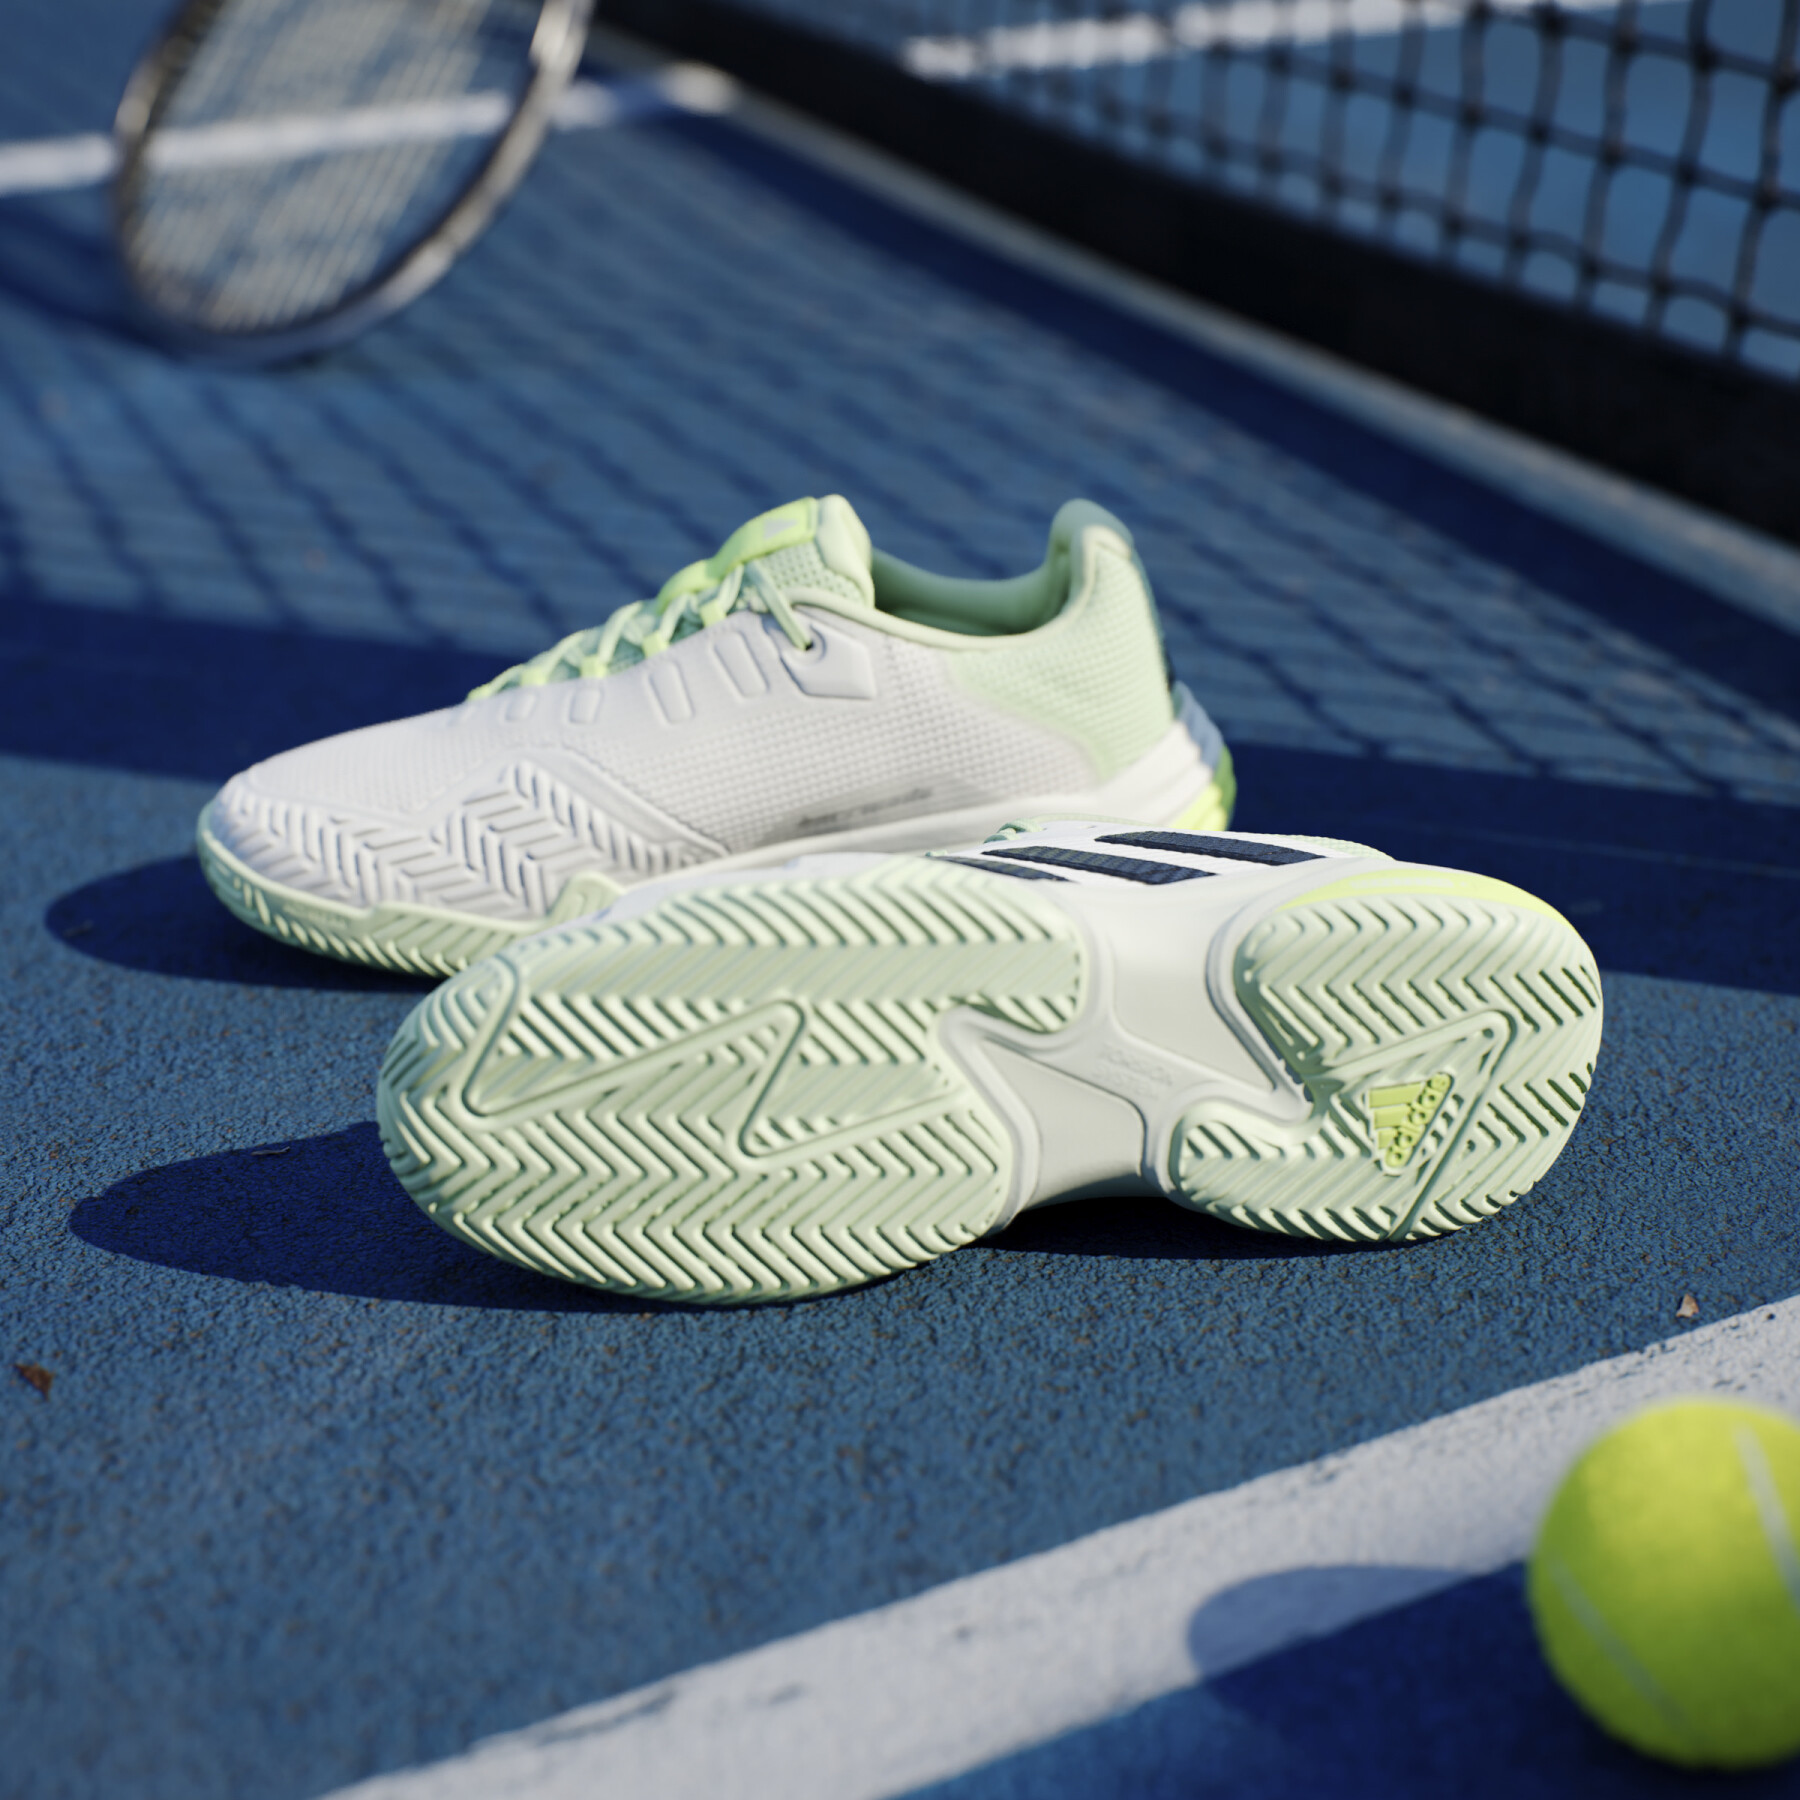 Chaussures de tennis adidas Barricade 13